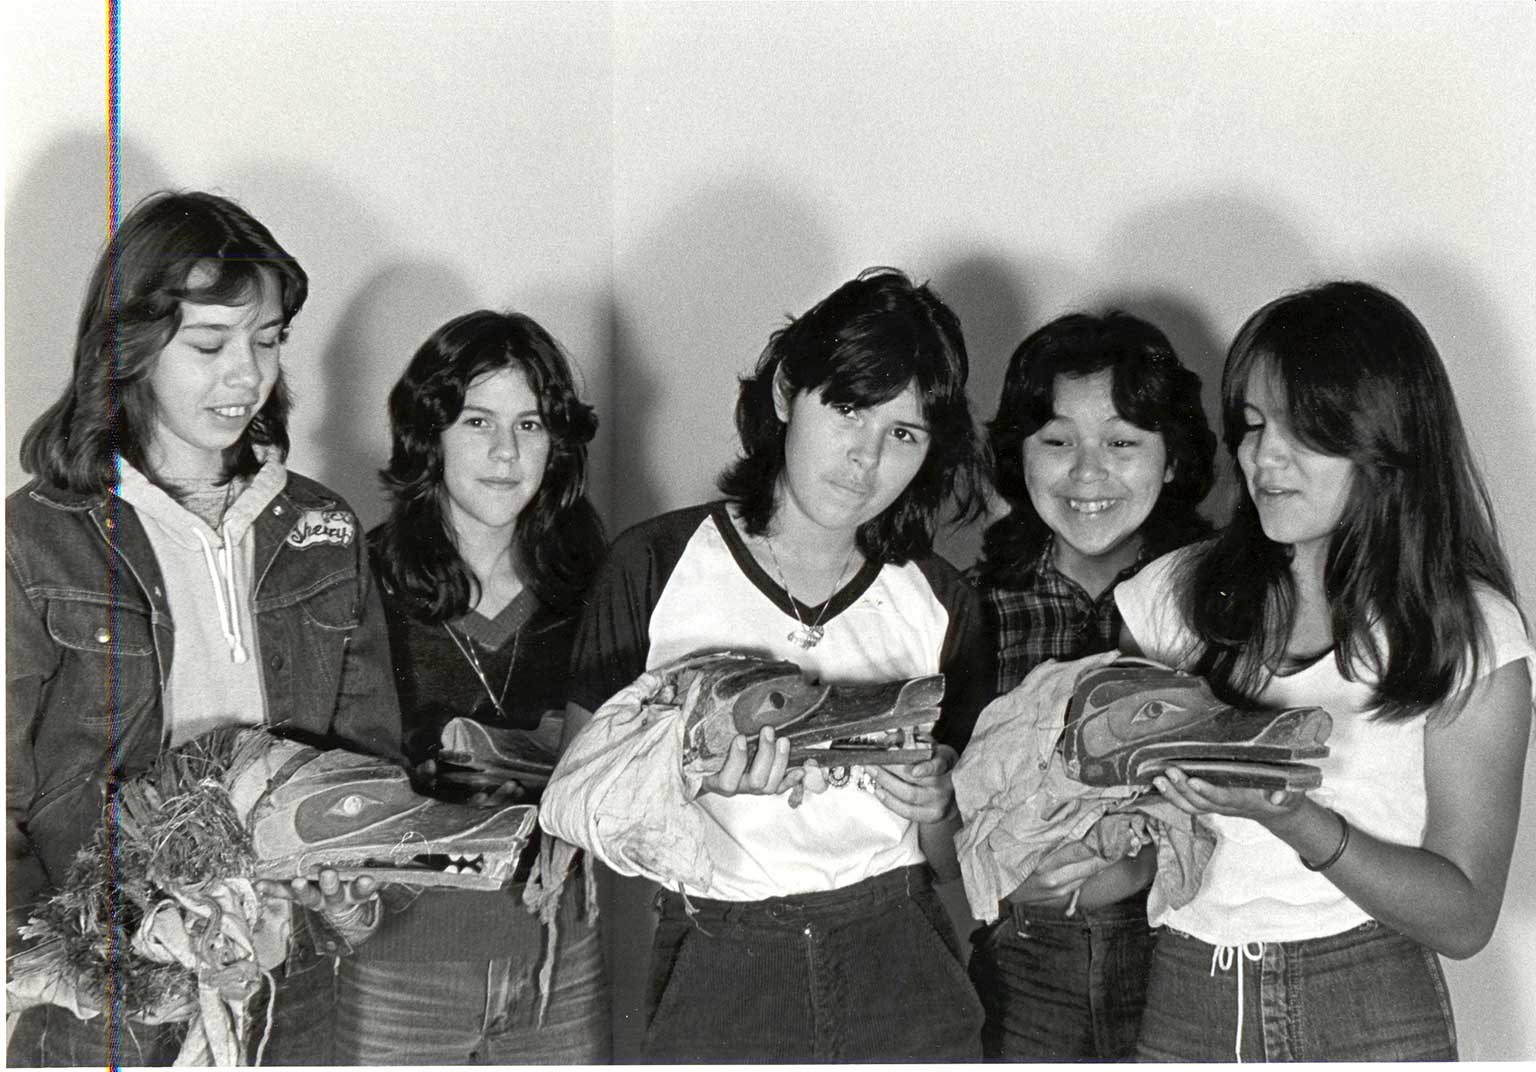 Photographie noir et blanc de cinq jeunes femmes en jeans et t-shirts tenant trois masques-visières de loup qu'elles admirent avec fierté